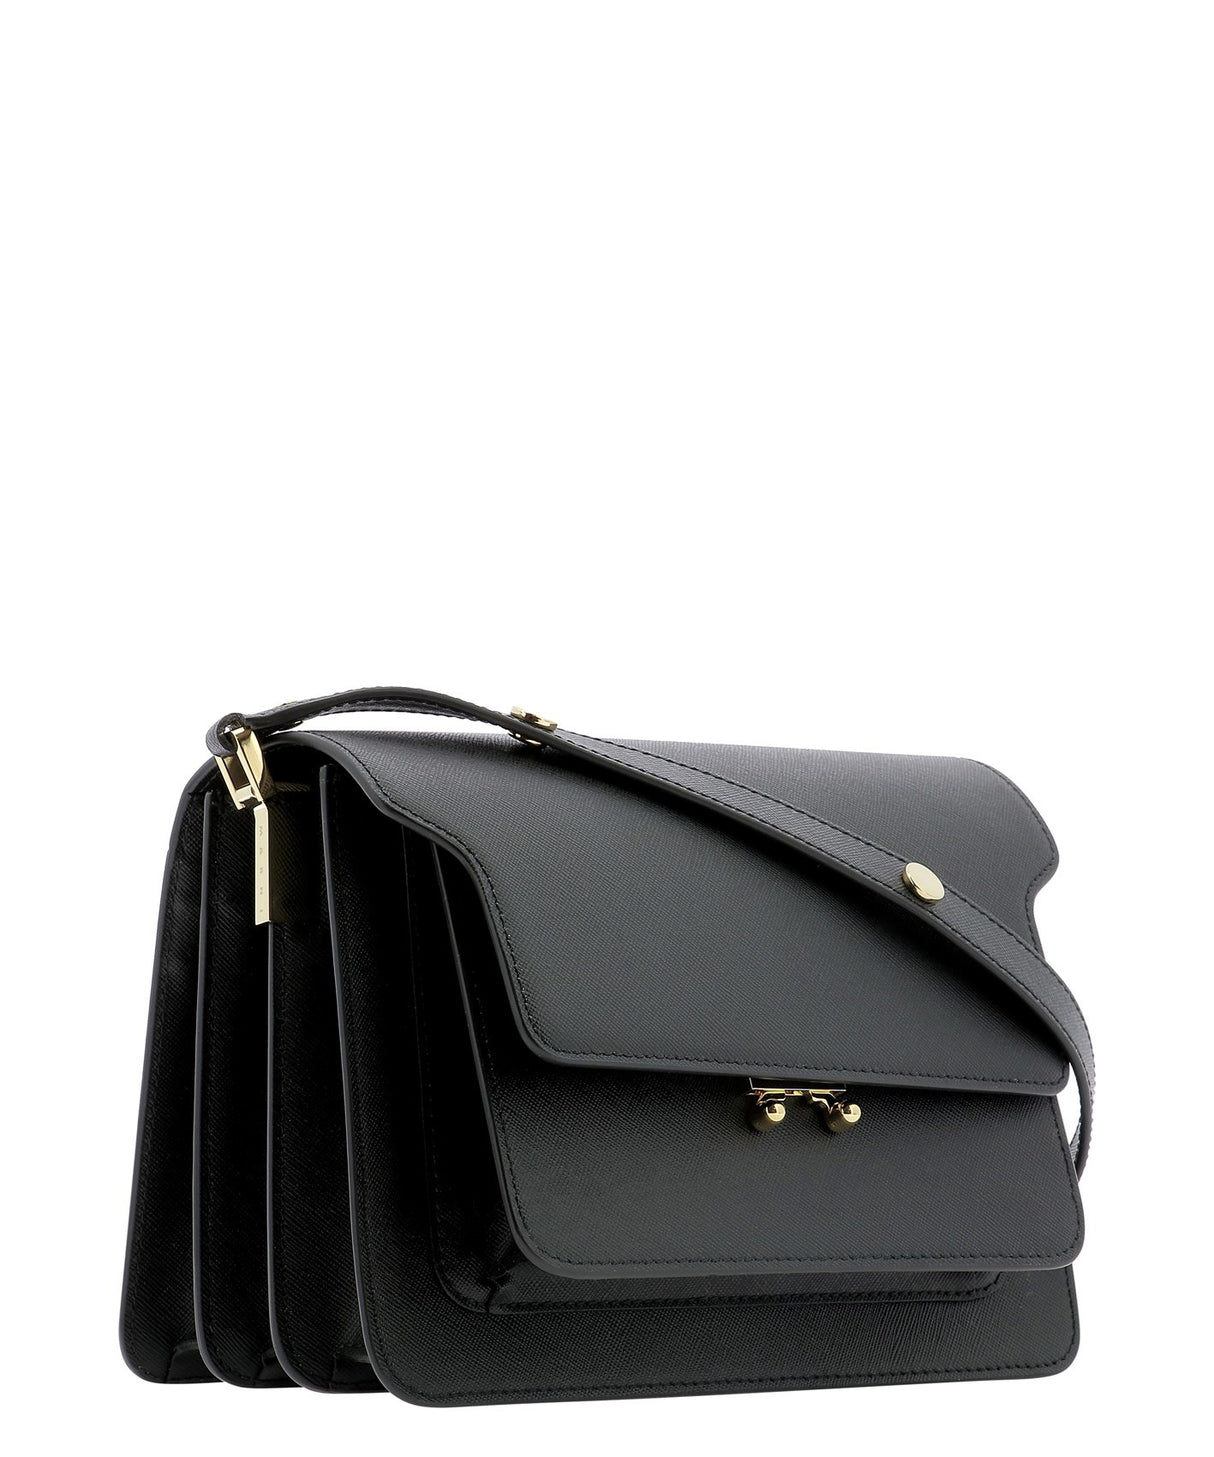 MARNI Sophisticated Black Leather Shoulder Bag for Women